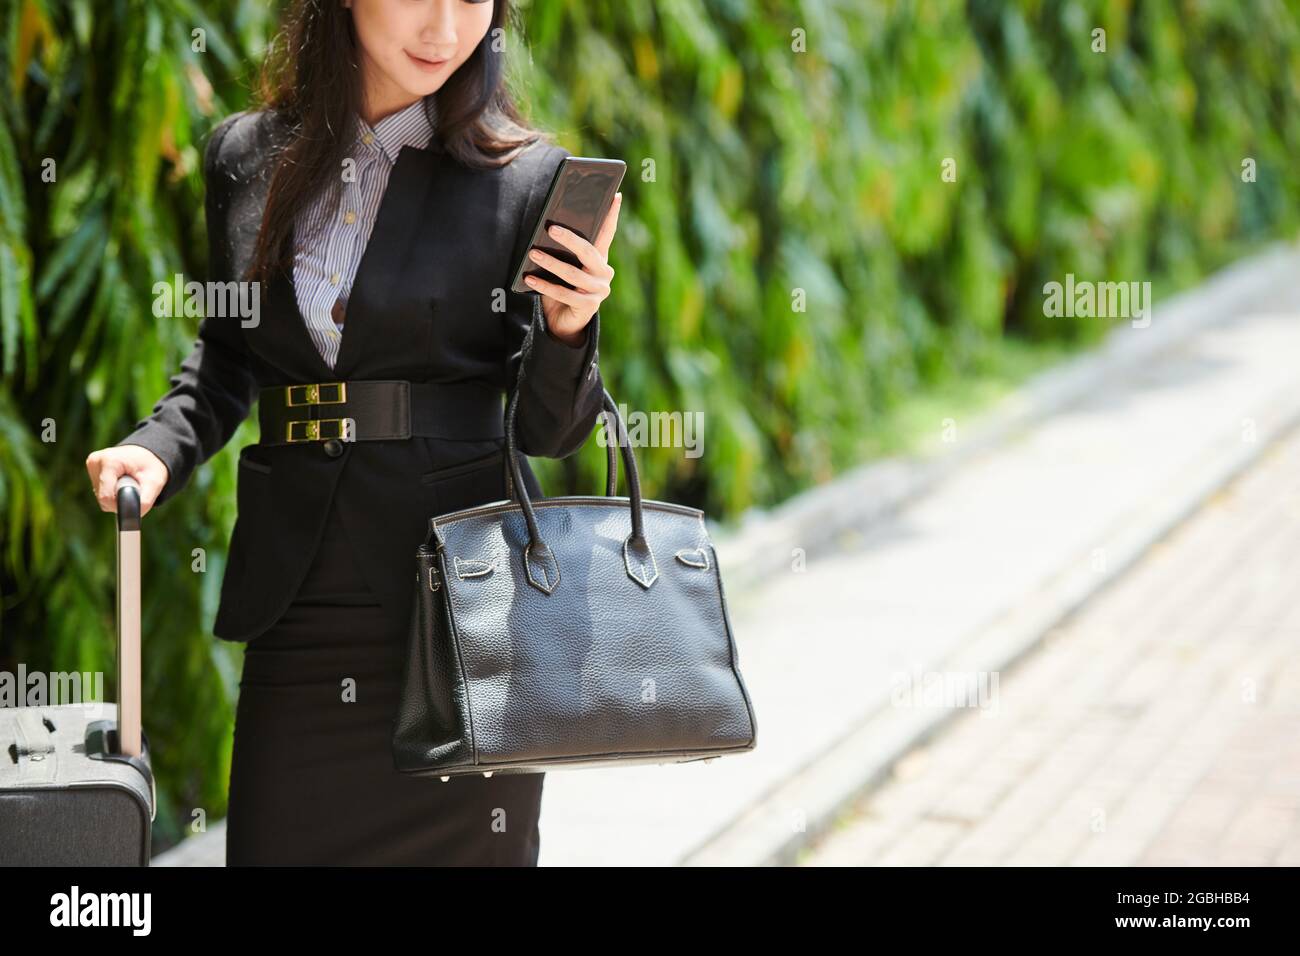 Inhalt junge asiatische Frau in formalwear, die Tasche und Koffer hält, während sie Informationen über den Flug am Telefon überprüft Stockfoto